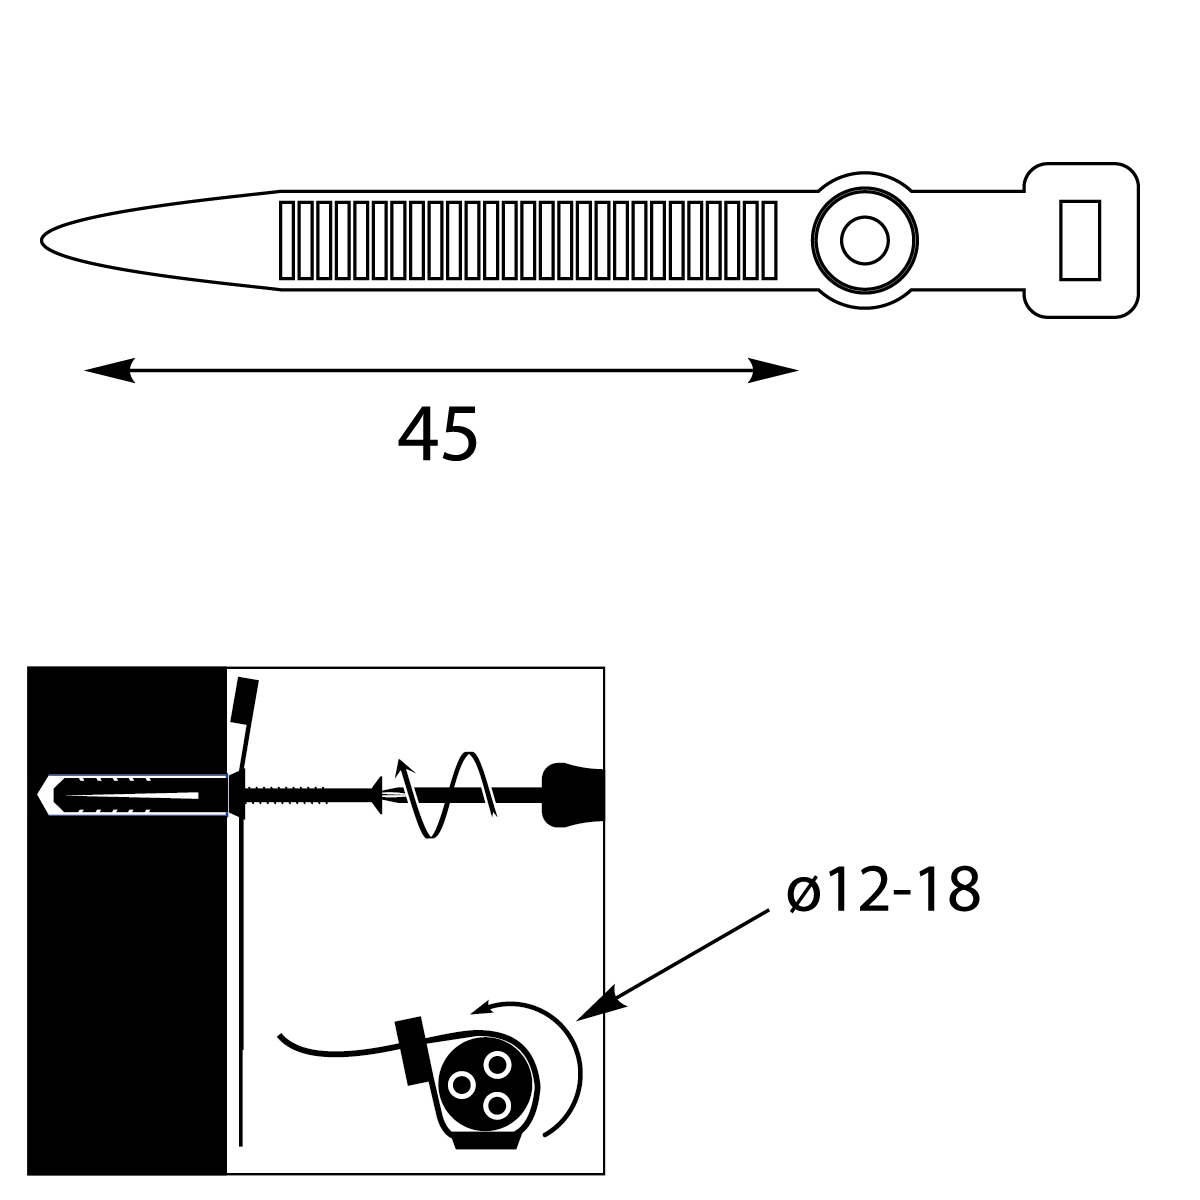 Uchwyt Paskowy Zaciskowy UP-z Ø18 UV, 45mm, czarny,elektro-plast